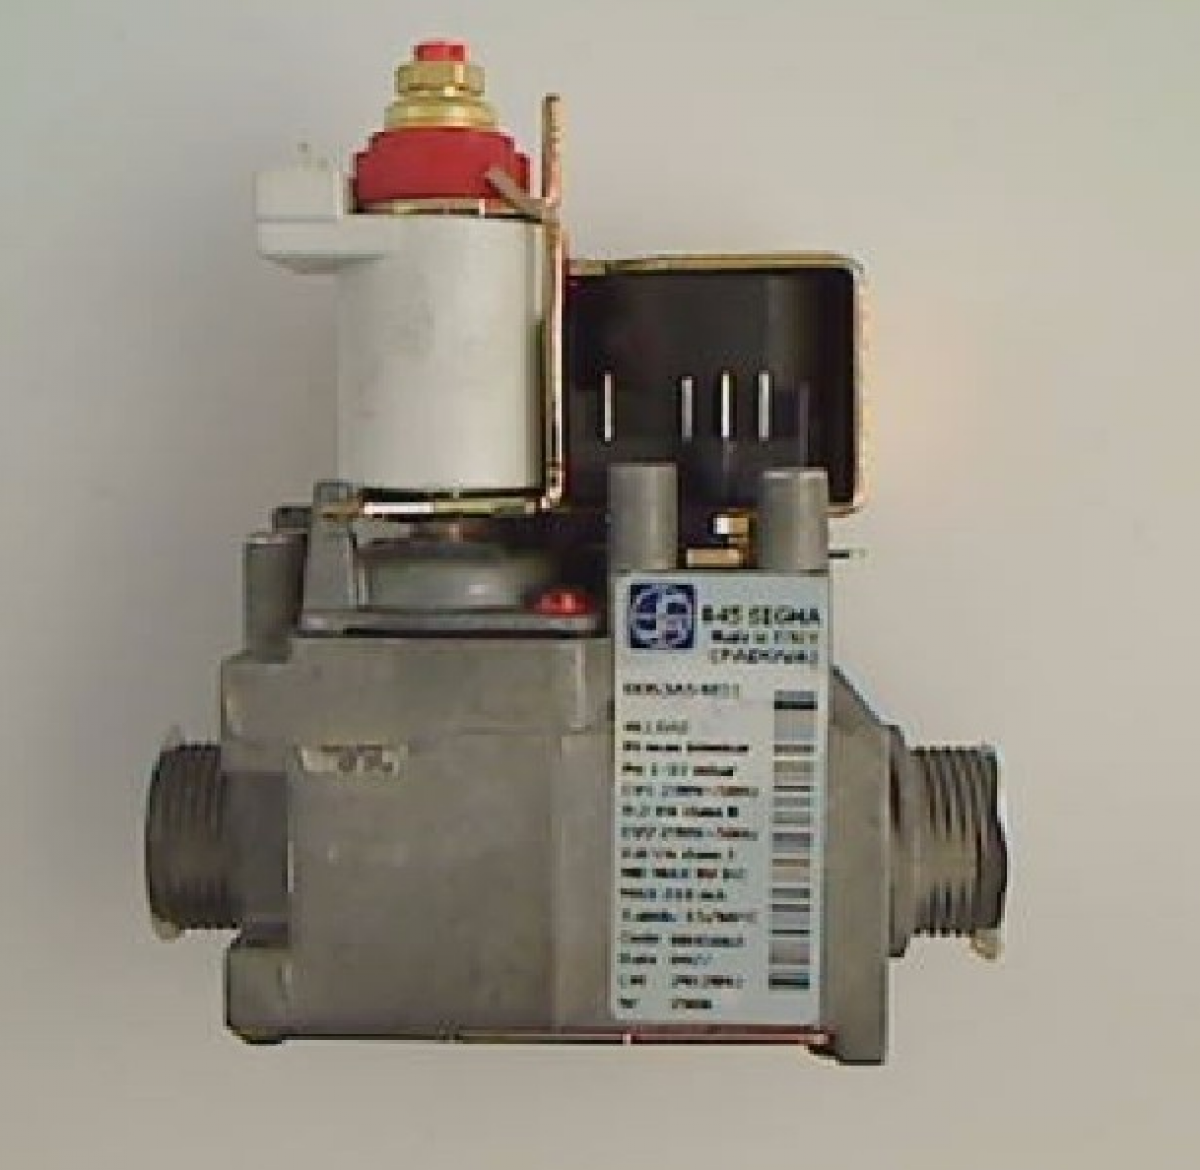 Газ клапан сколько. Газовый клапан sit 845. Газовый клапан сит845 сопротивления. Газовый клапан для котла 7247617901149103. Газовый клапан для котла ERCO.